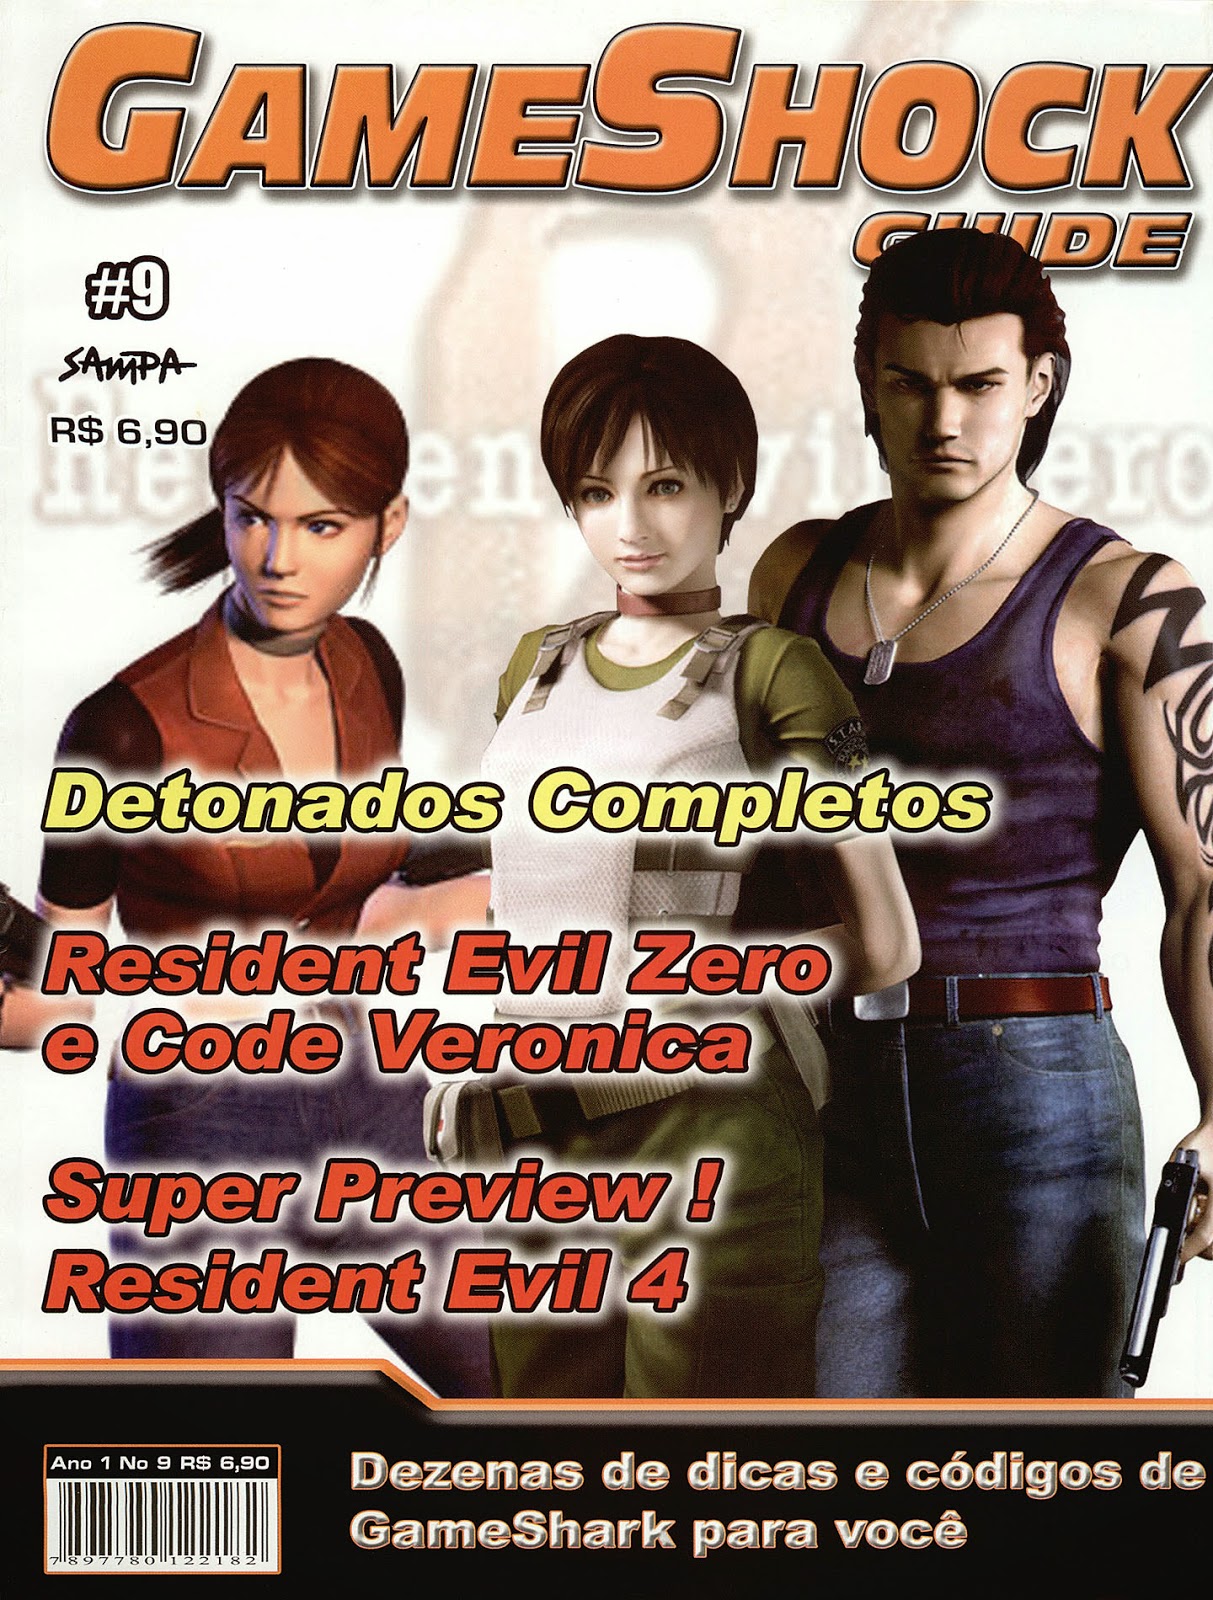 Detonado Resident Evil Code Veronica Playstation